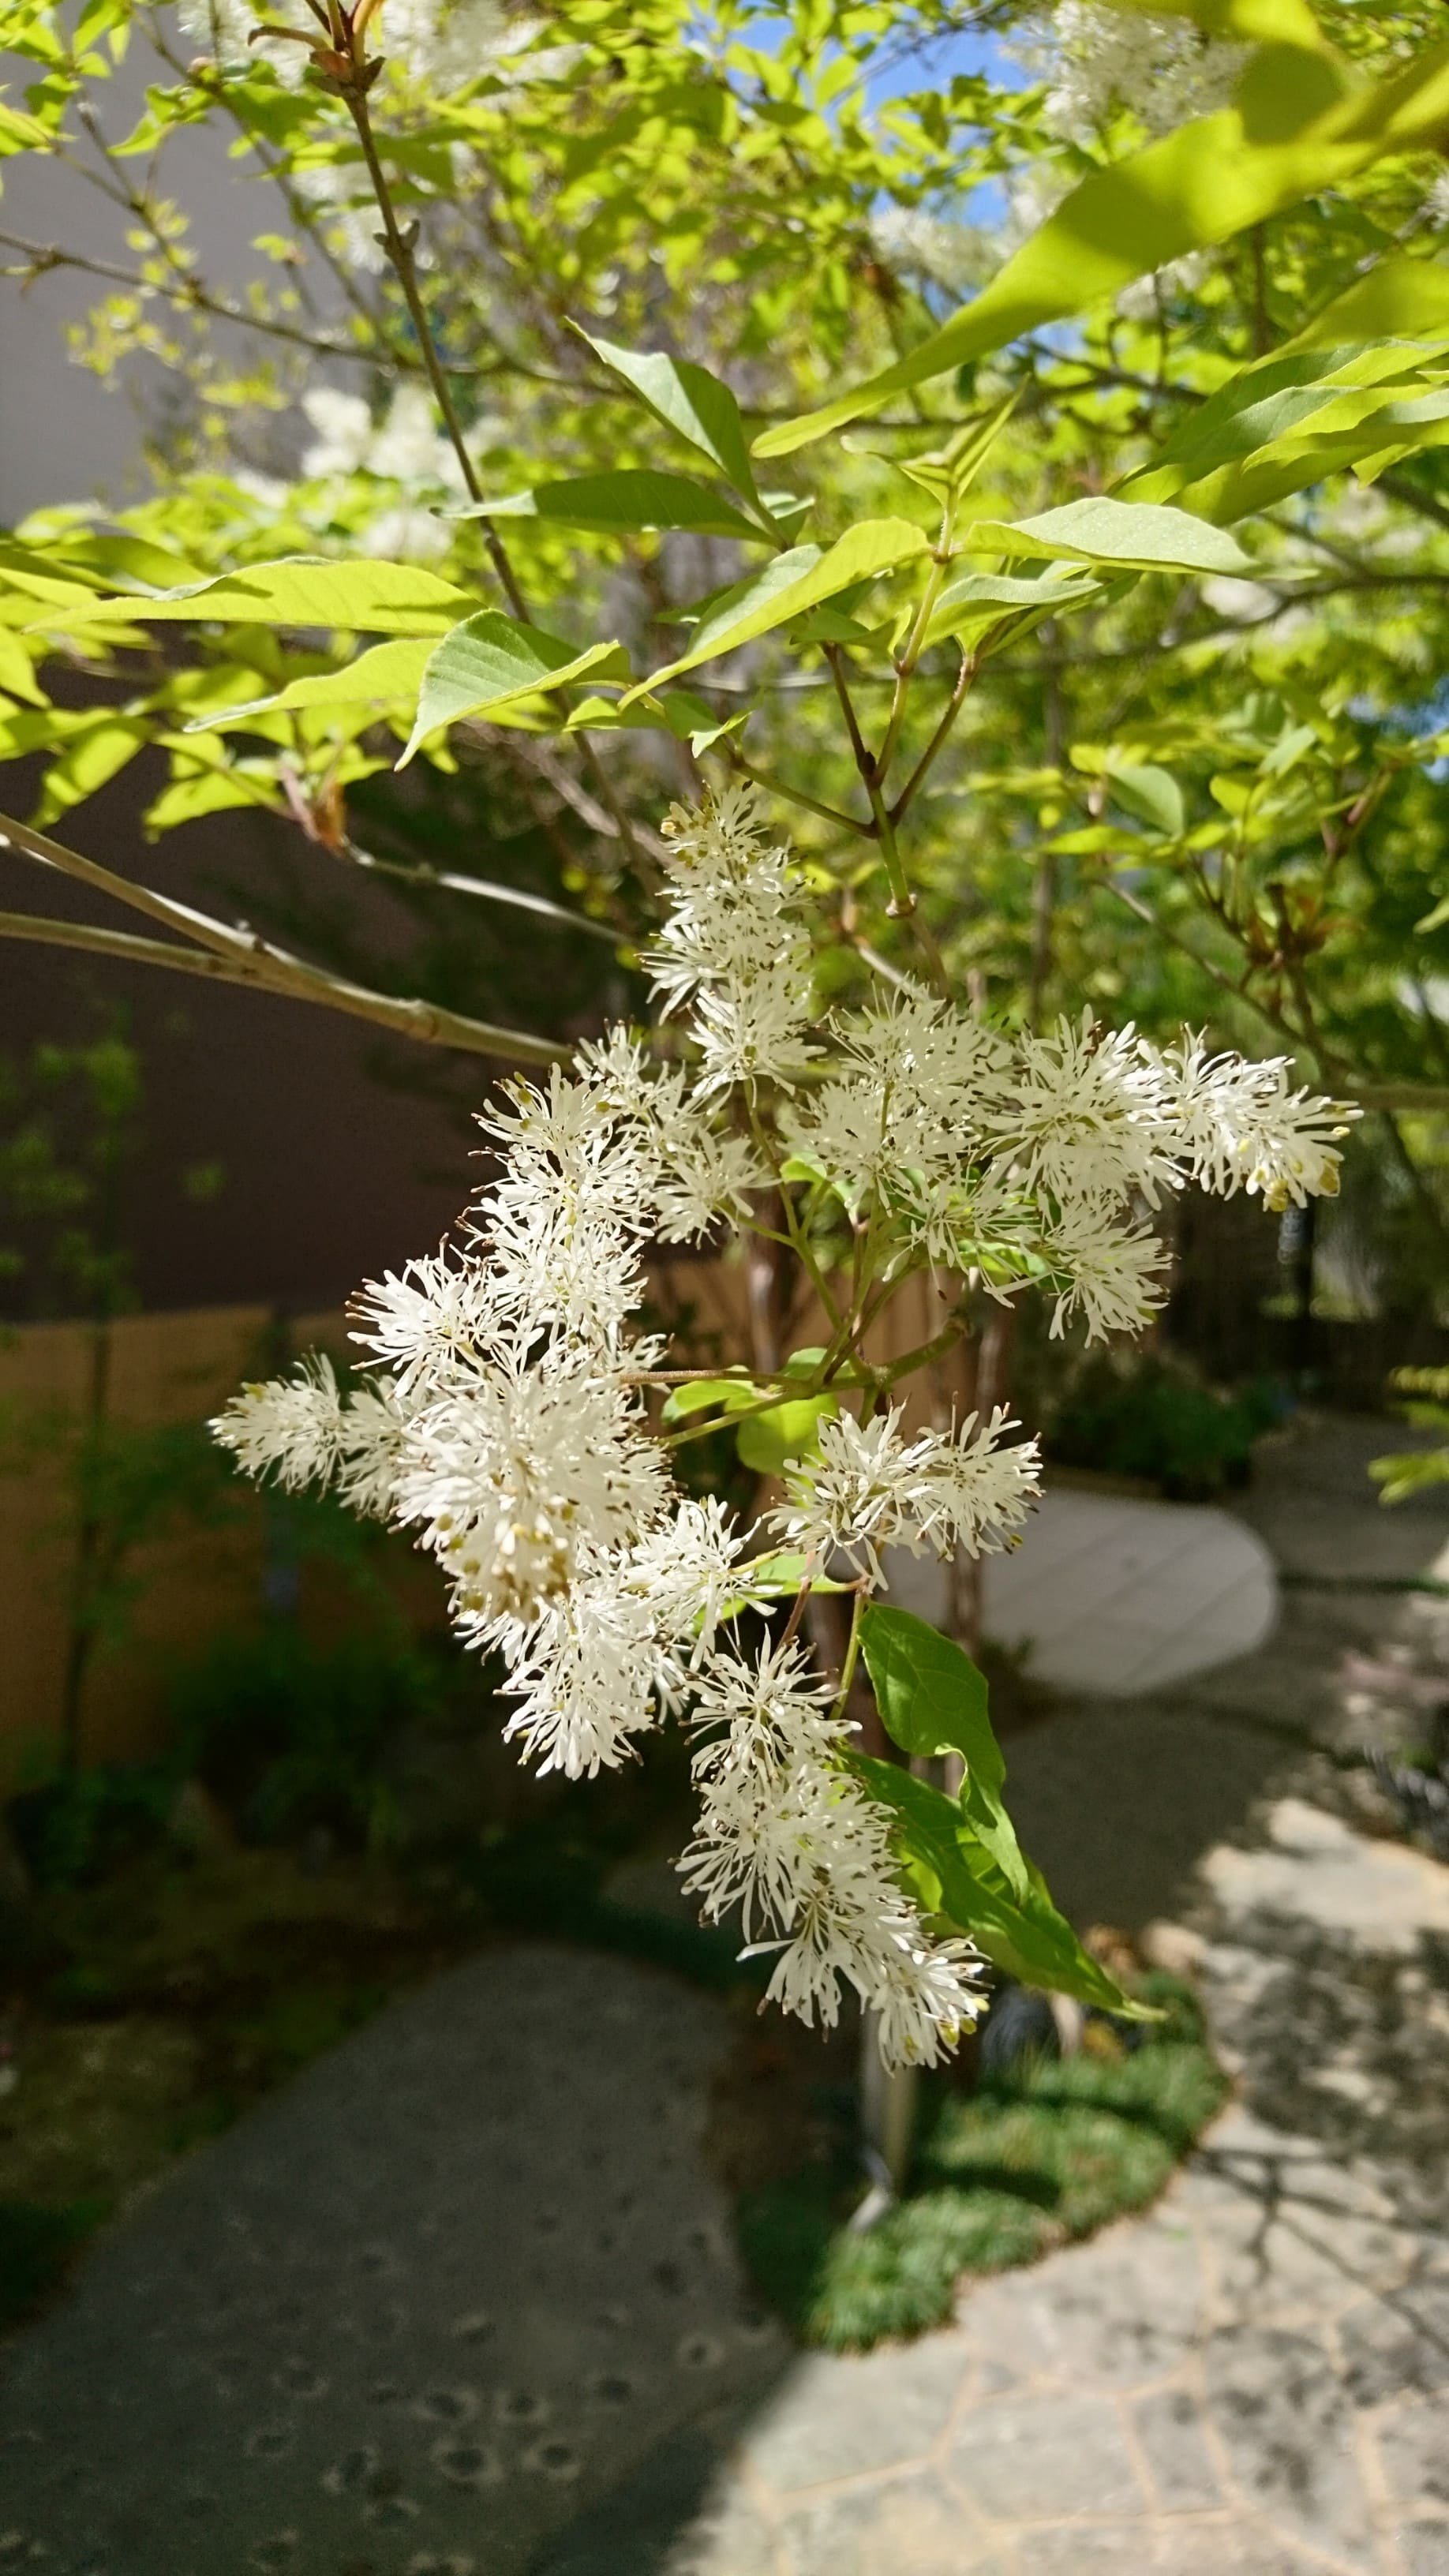 アオダモの雄花と雌花を見比べてみた 春に咲くレアな白い糸状の風媒花